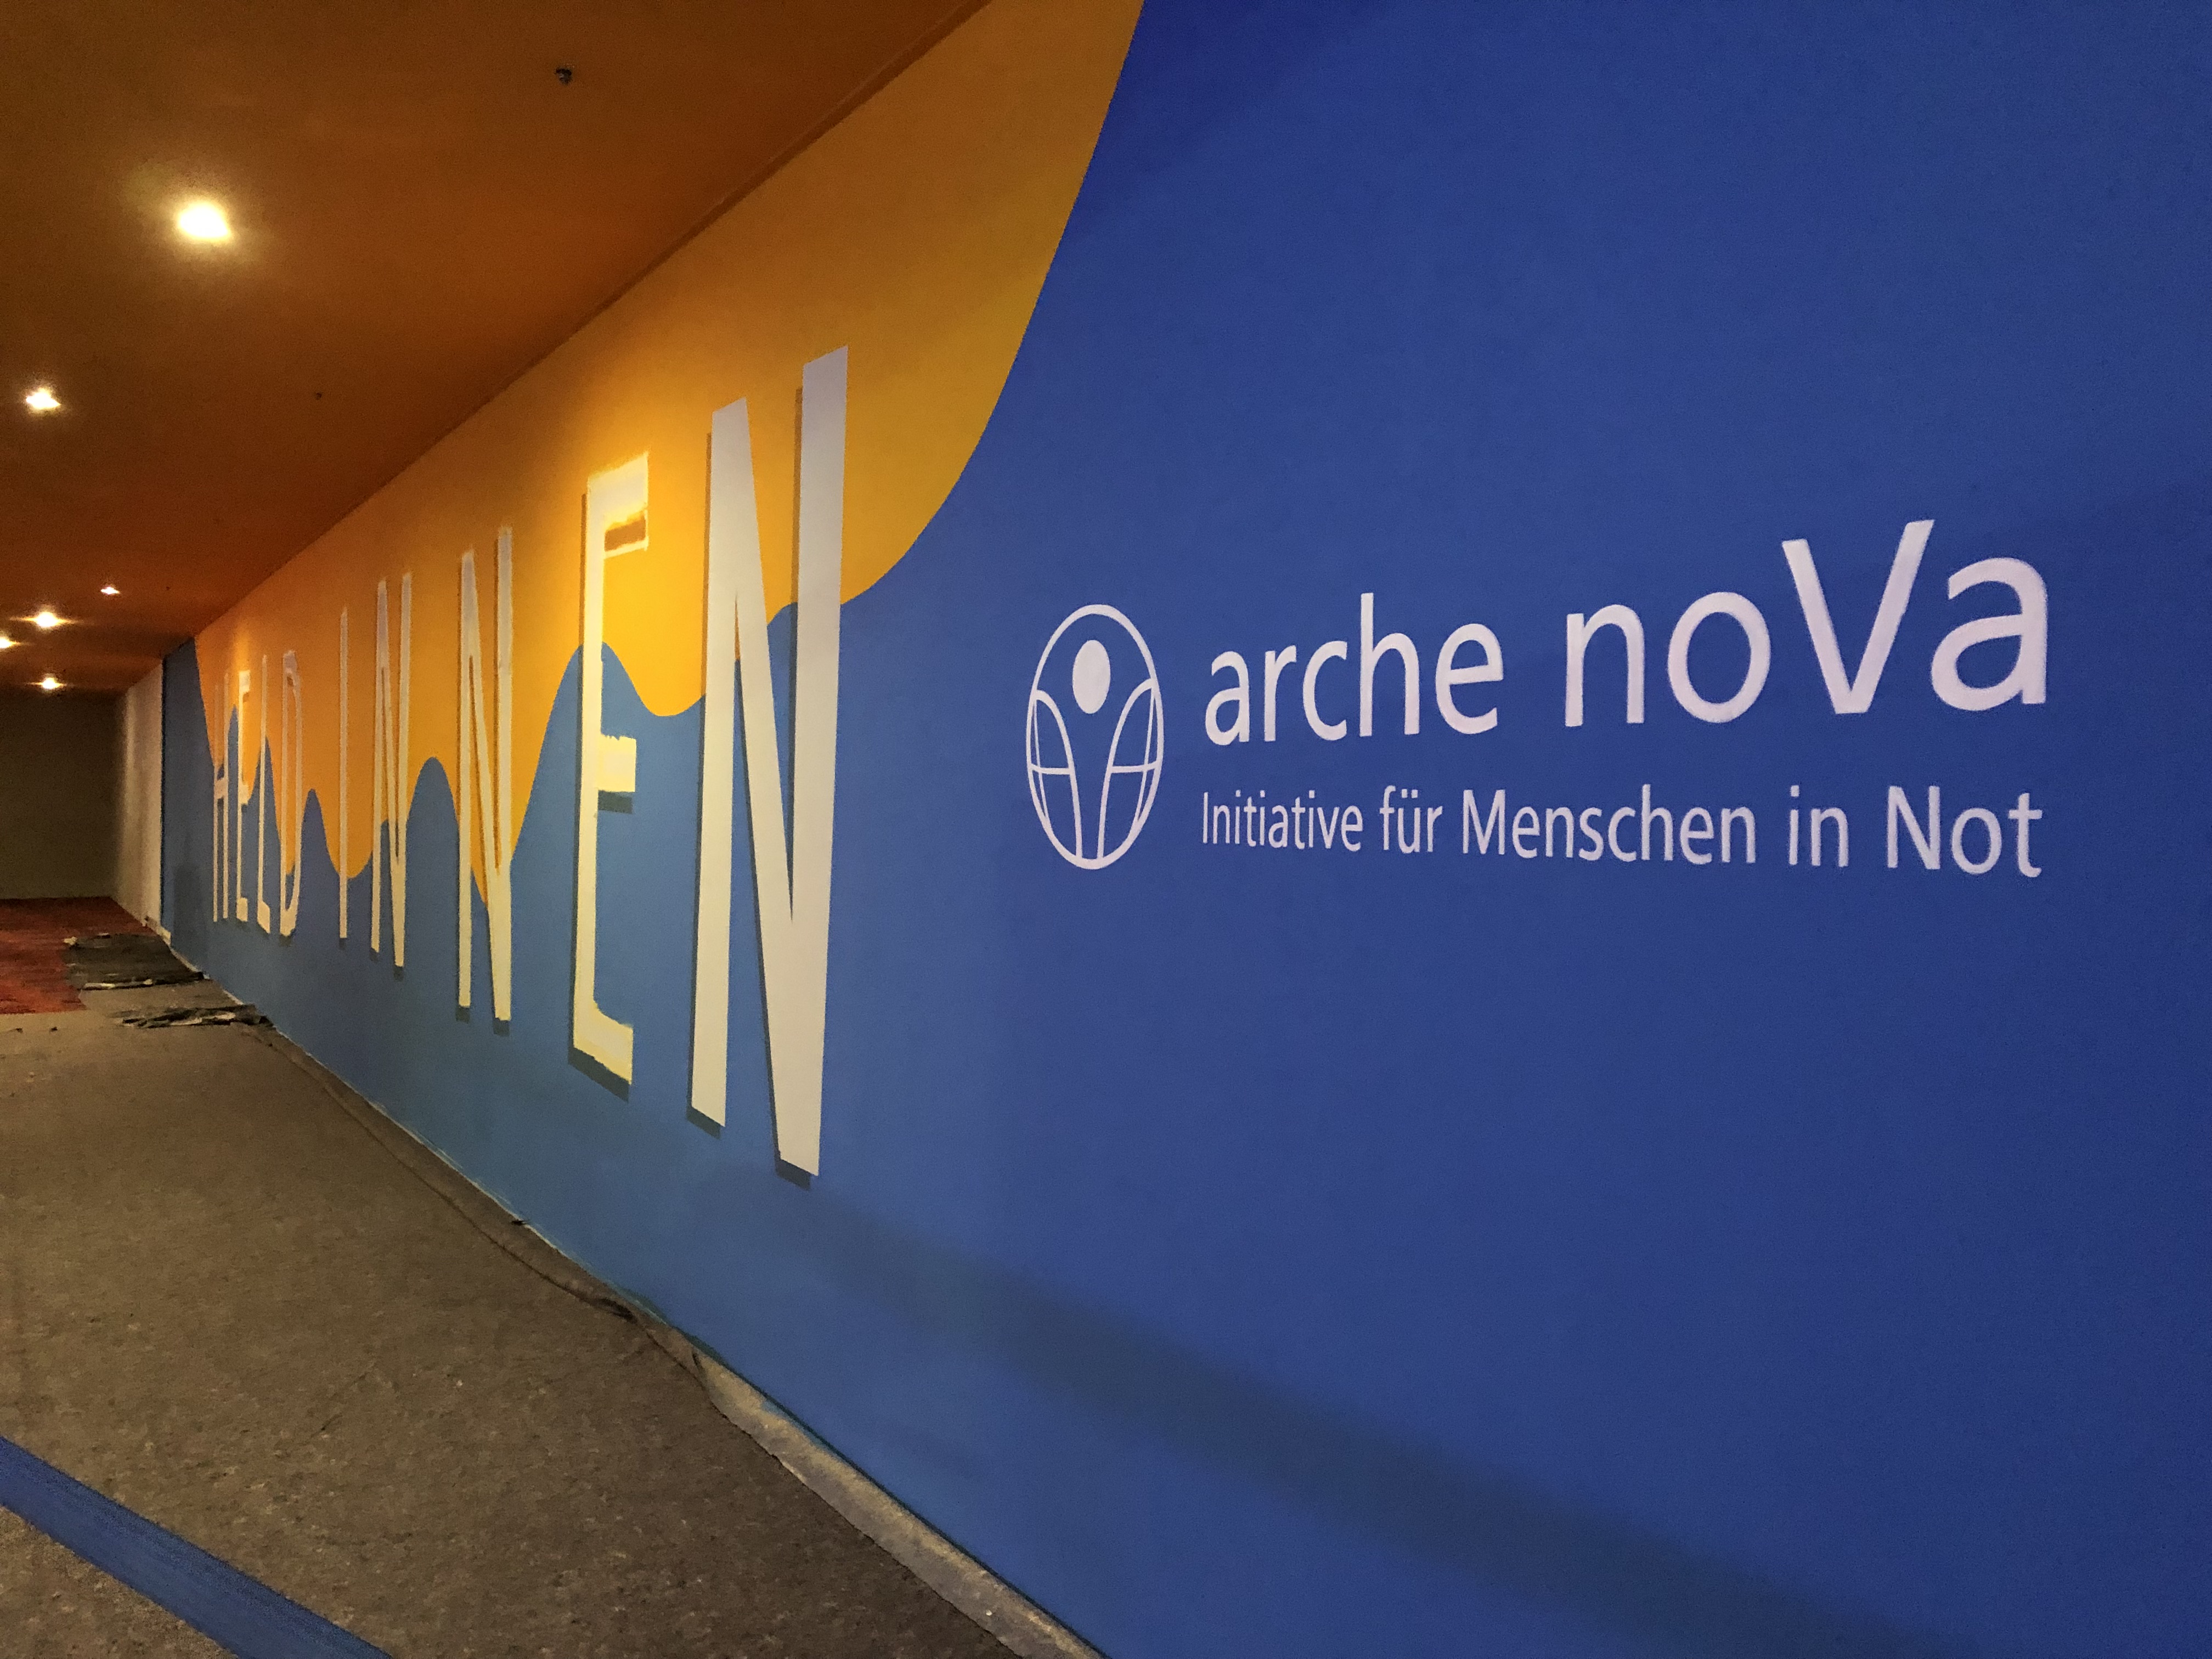 der Schriftzug arche noVa steht auf blauem Grund auf einer Wand, daneben ein Schriftzug auf blau-gelbem Wellengrund